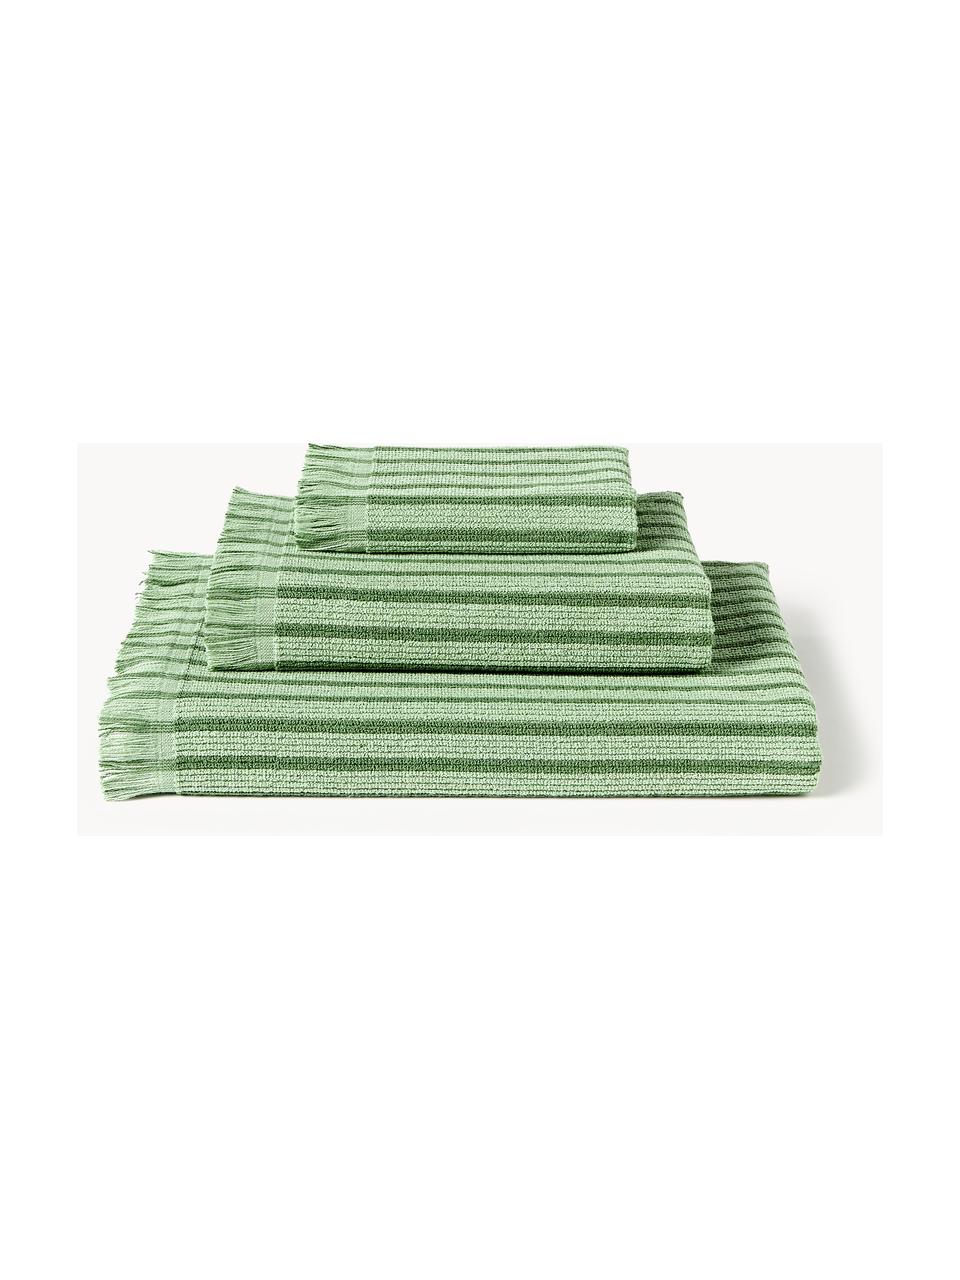 Serviettes de toilette Irma, tailles variées, Vert, 4 éléments (2 serviettes de toilette et 2 draps de bain)